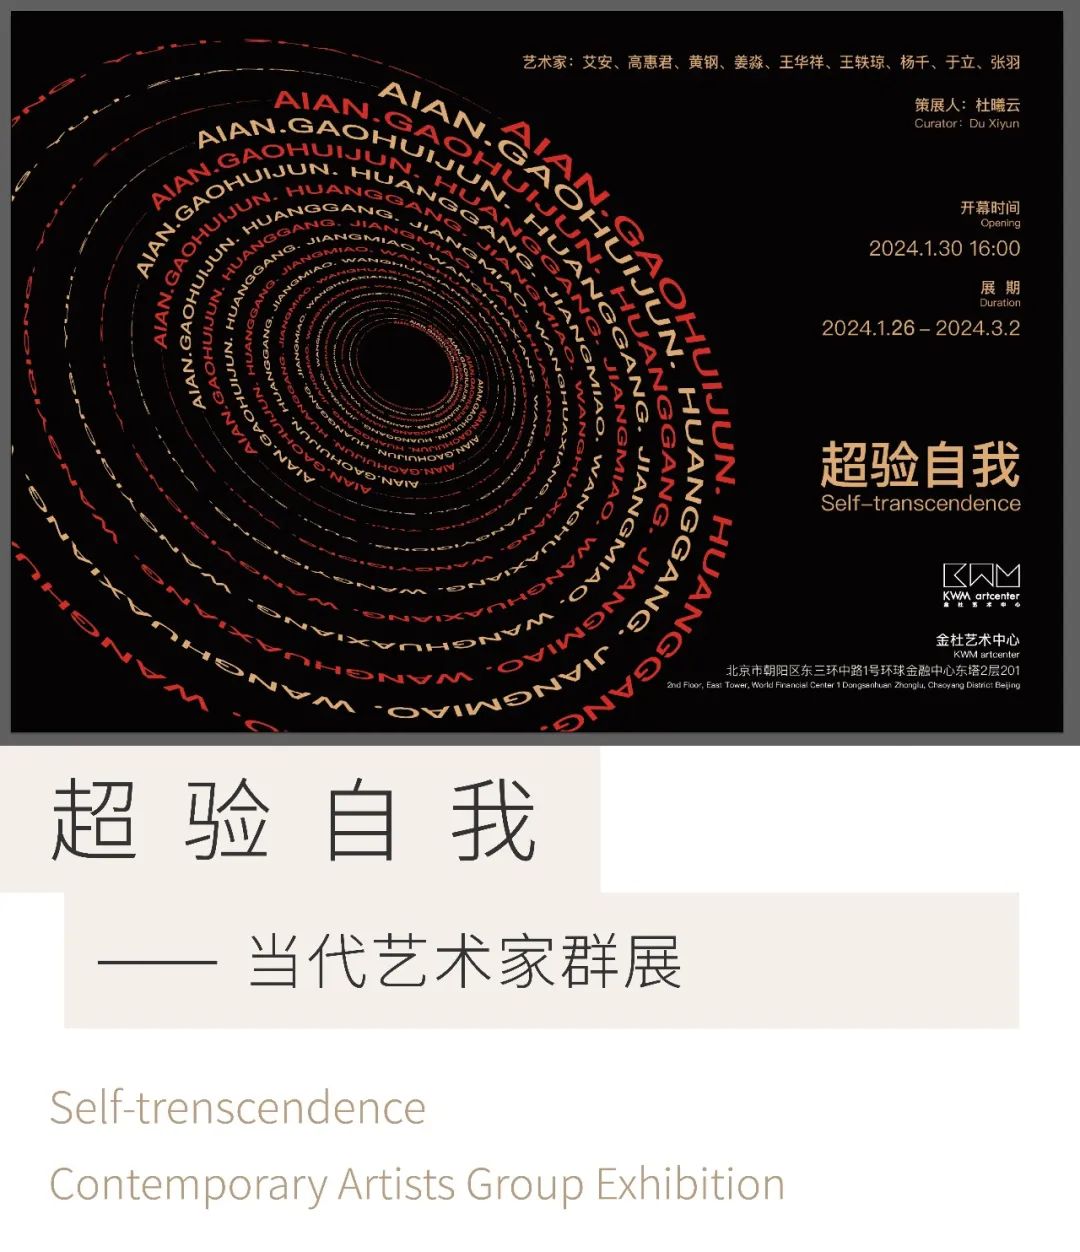 春节好眼福 | 杜曦云策展，“超验自我—— 当代艺术家群展”1月26日将在北京开展